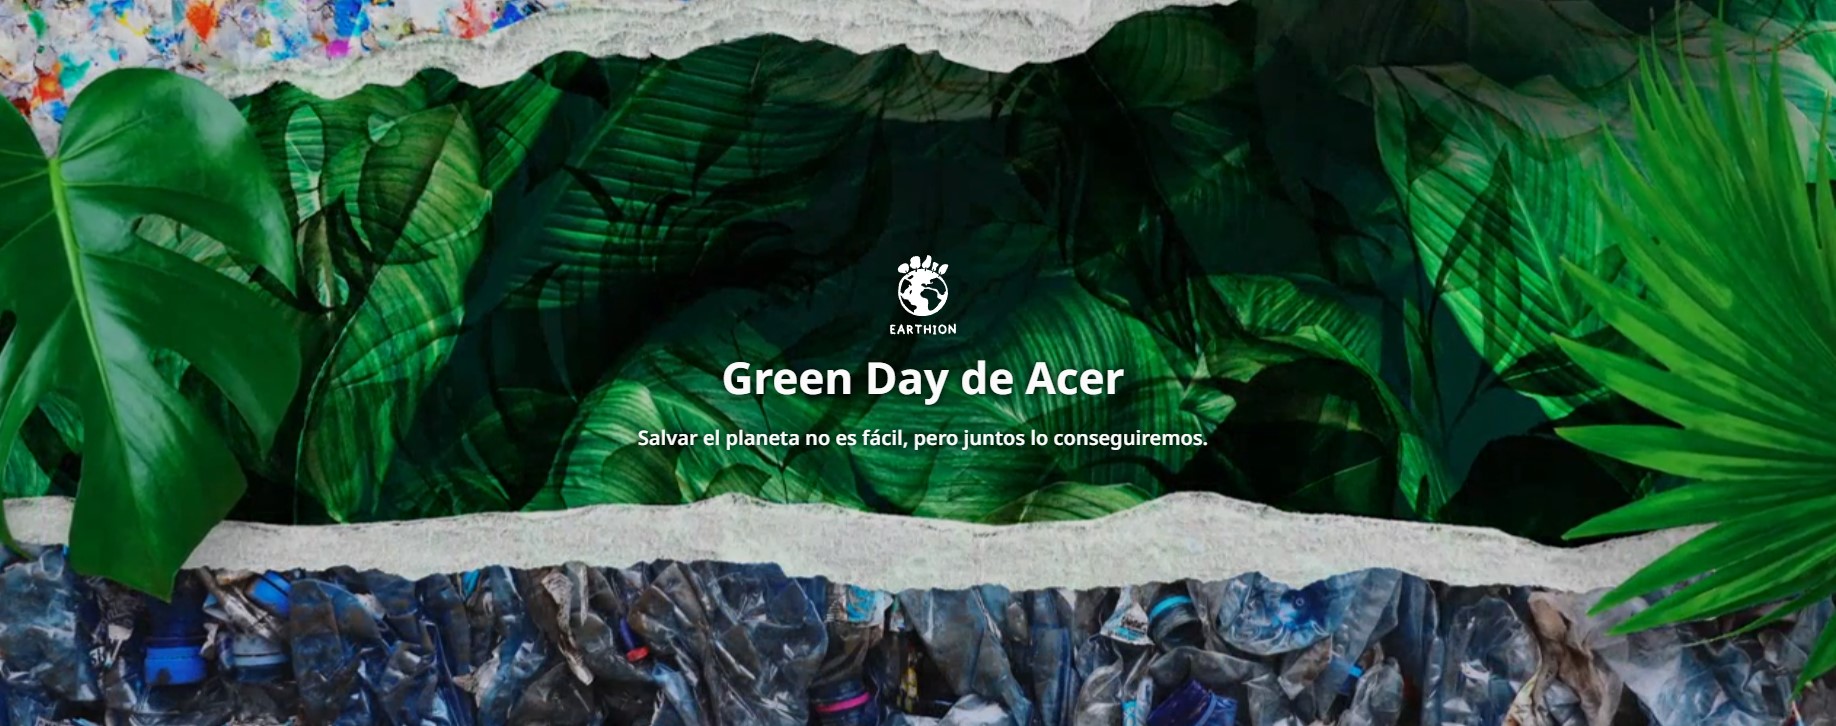 ACER comparte los principales motivos de sostenibilidad Earthion en Acer Green Day 